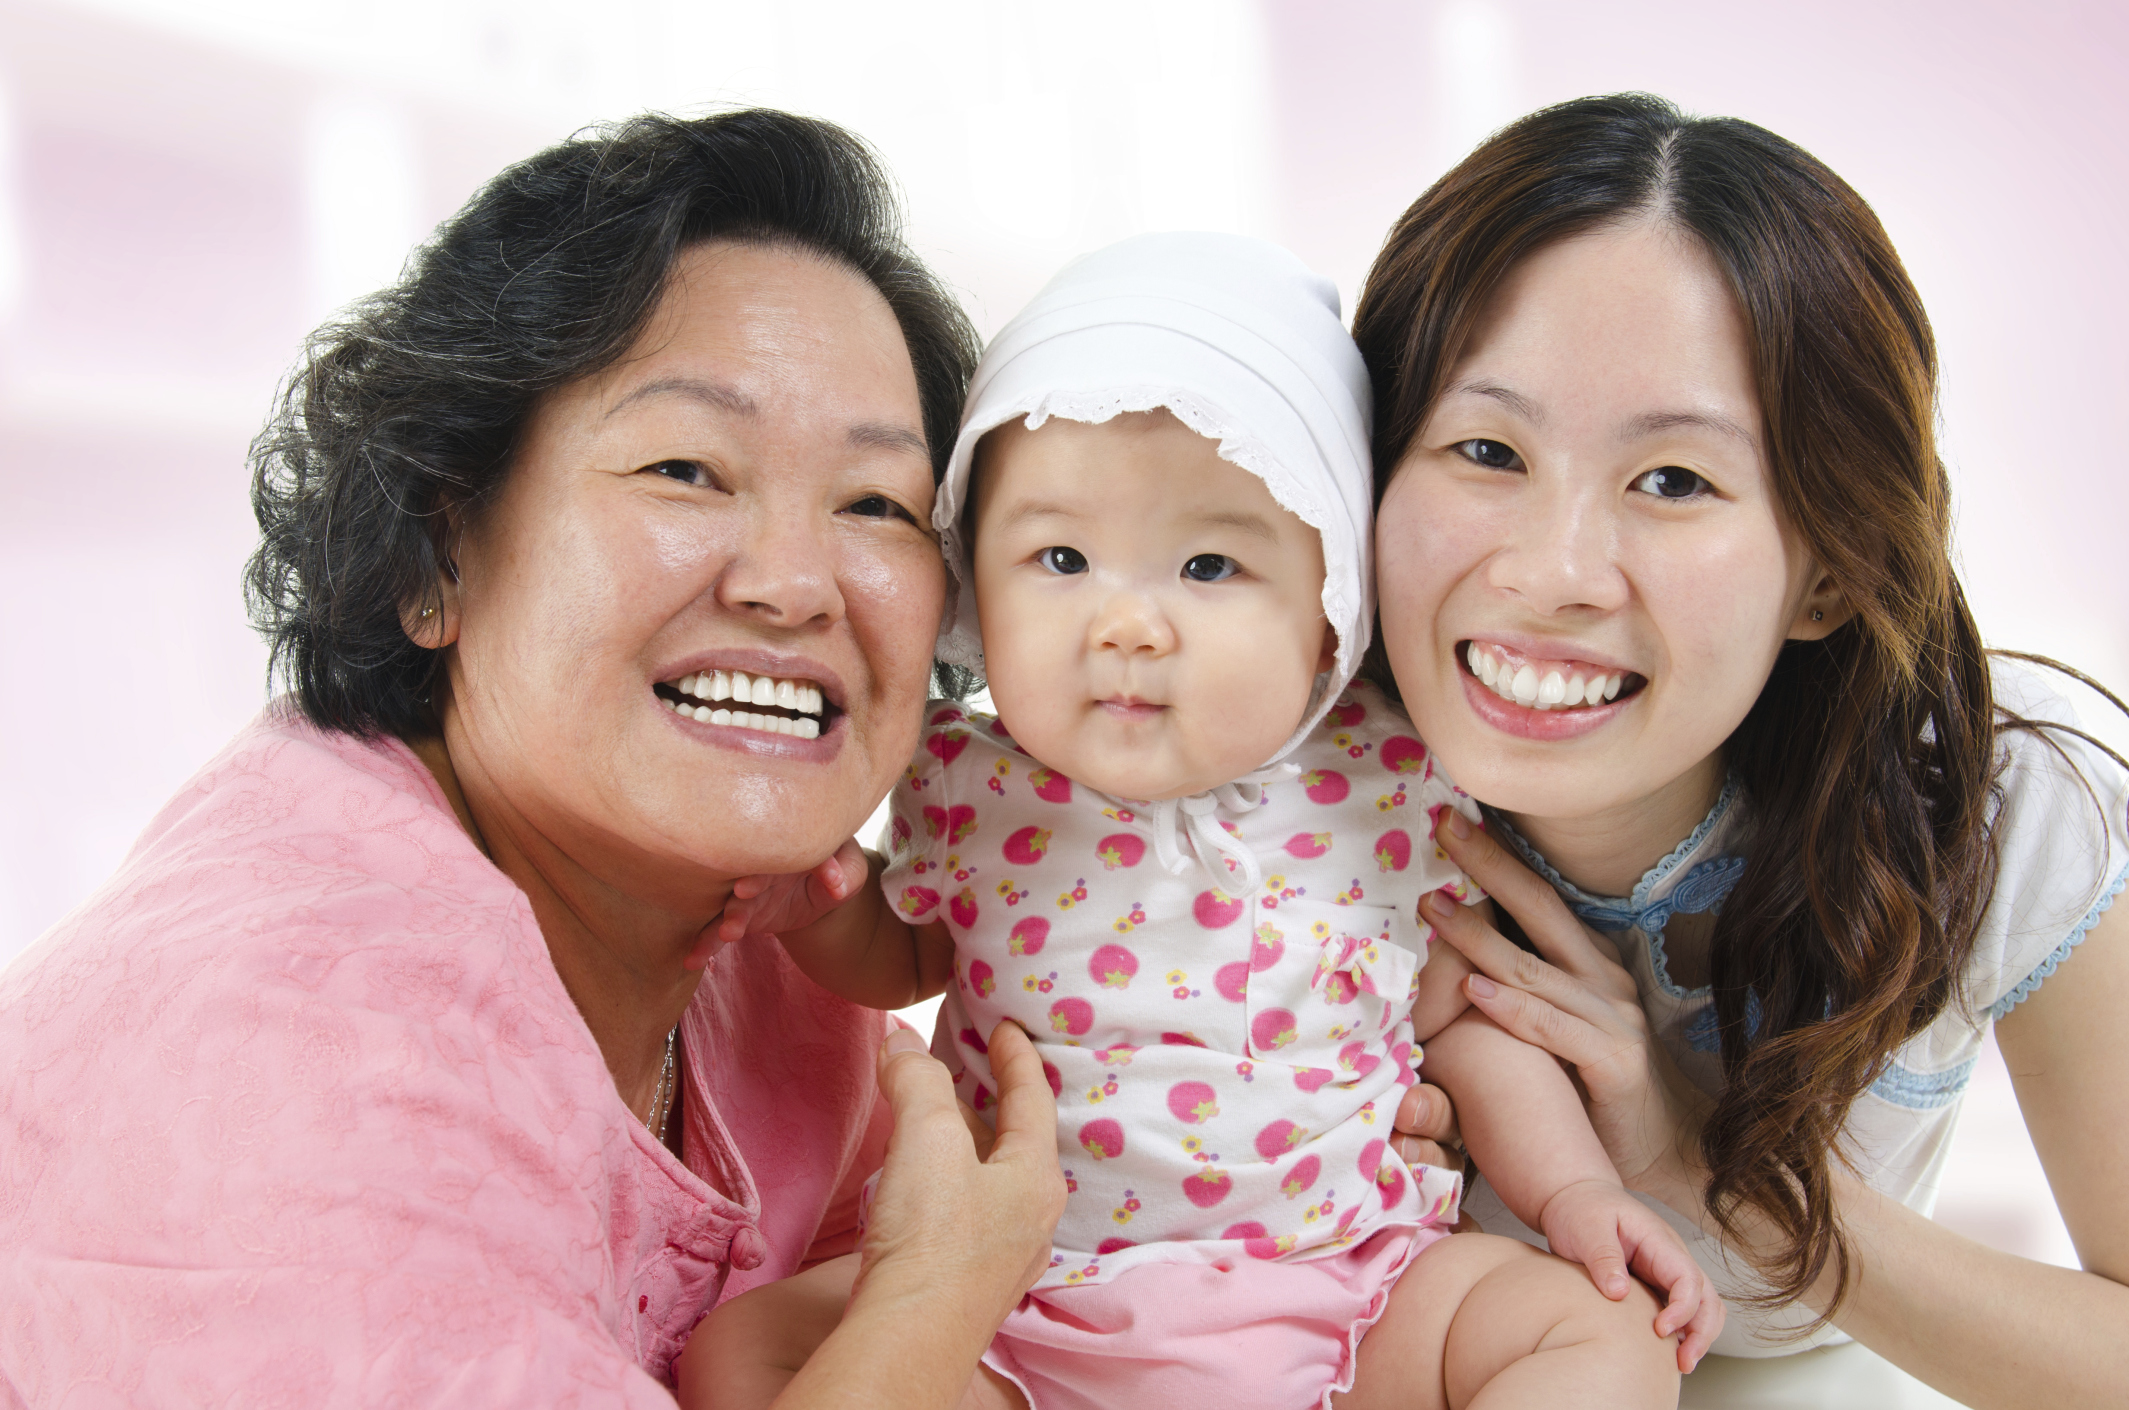 Three generation family photo of Asian females